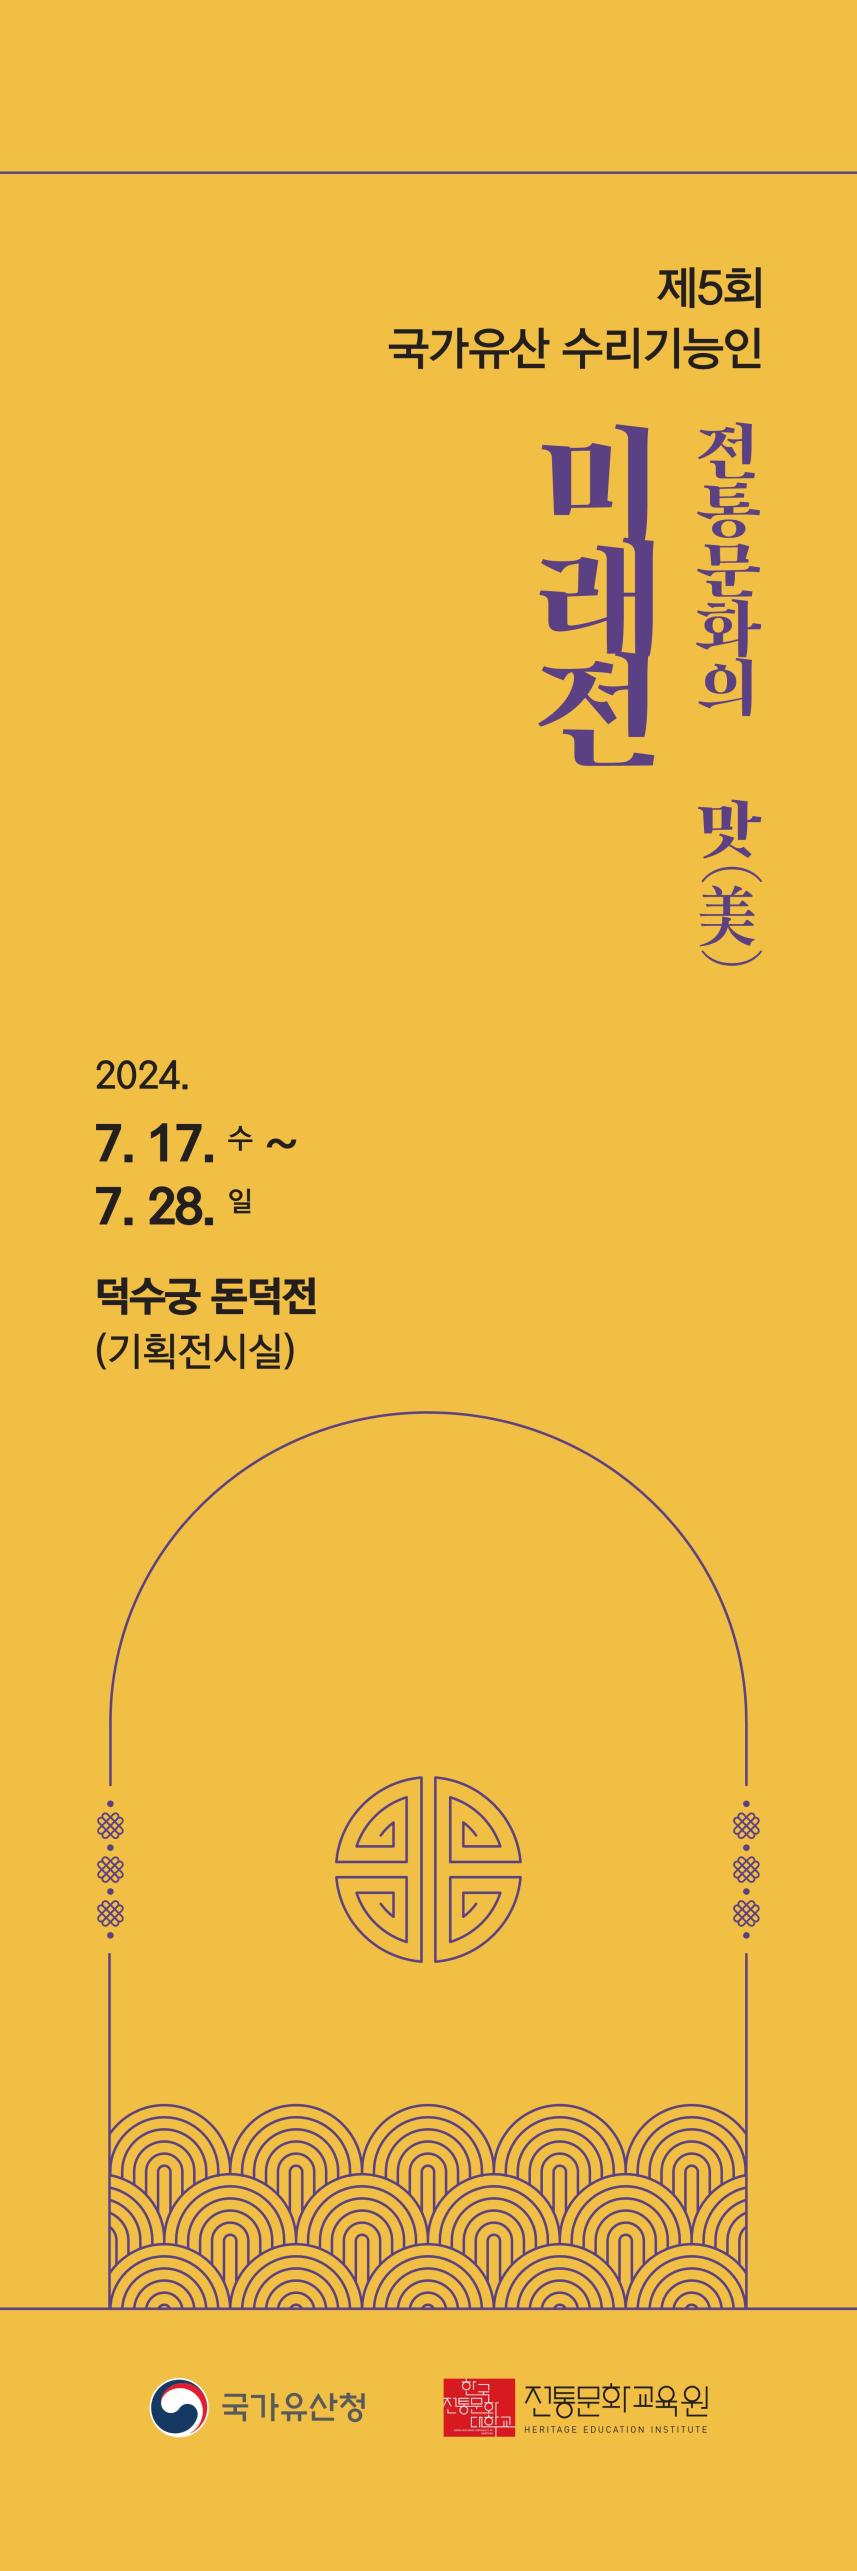 「제5회 국가유산 수리기능인 미래전」 홍보 배너